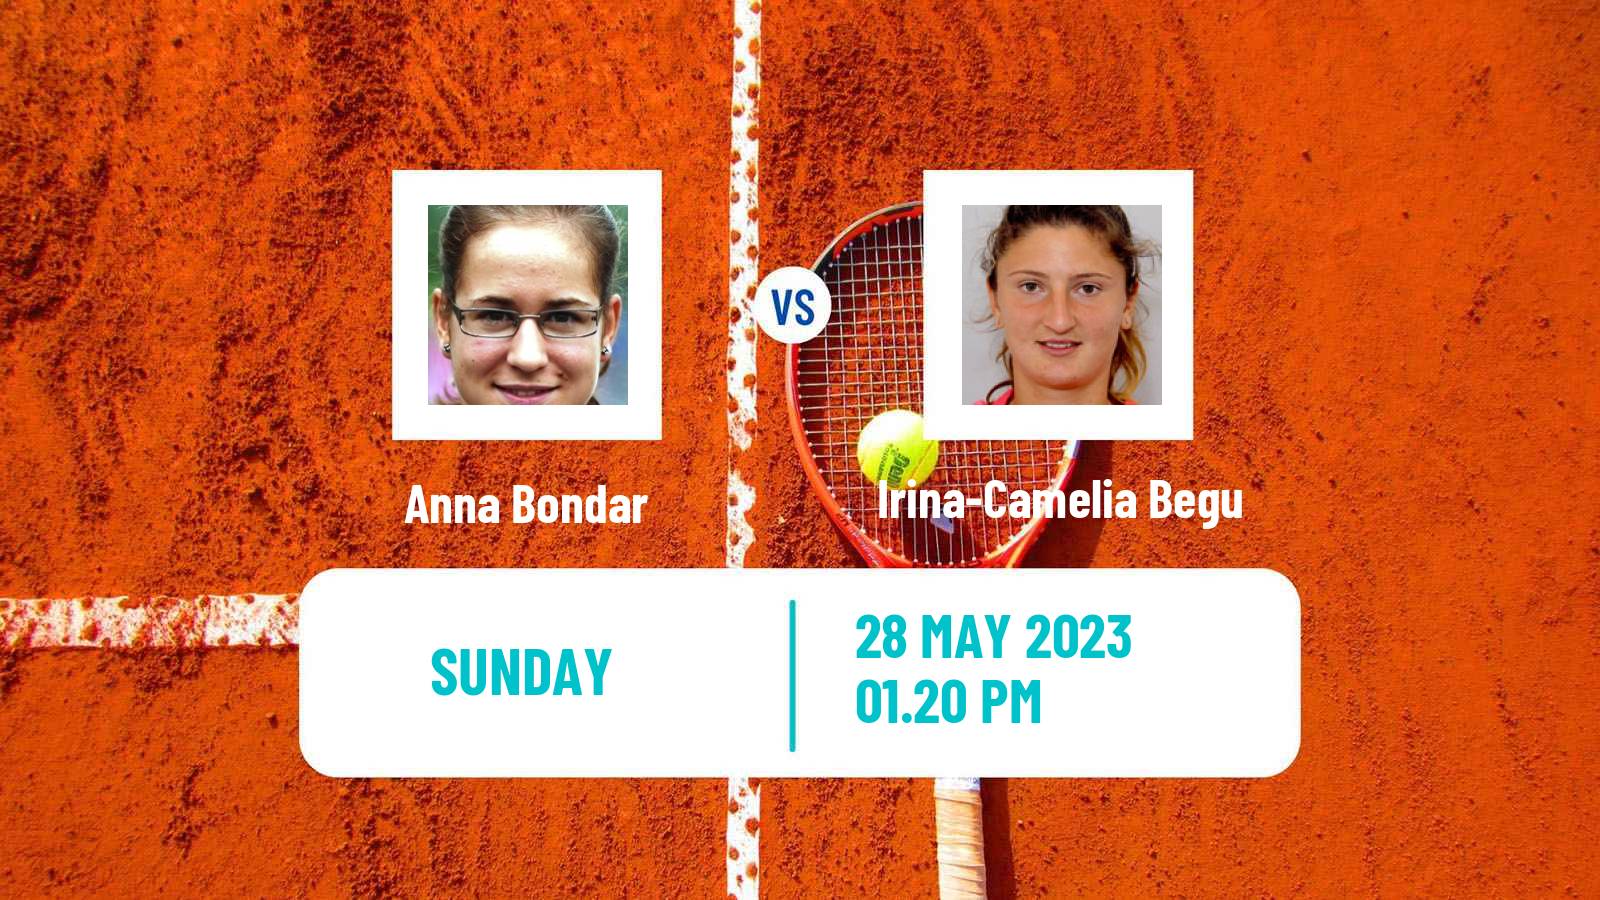 Tennis WTA Roland Garros Anna Bondar - Irina-Camelia Begu